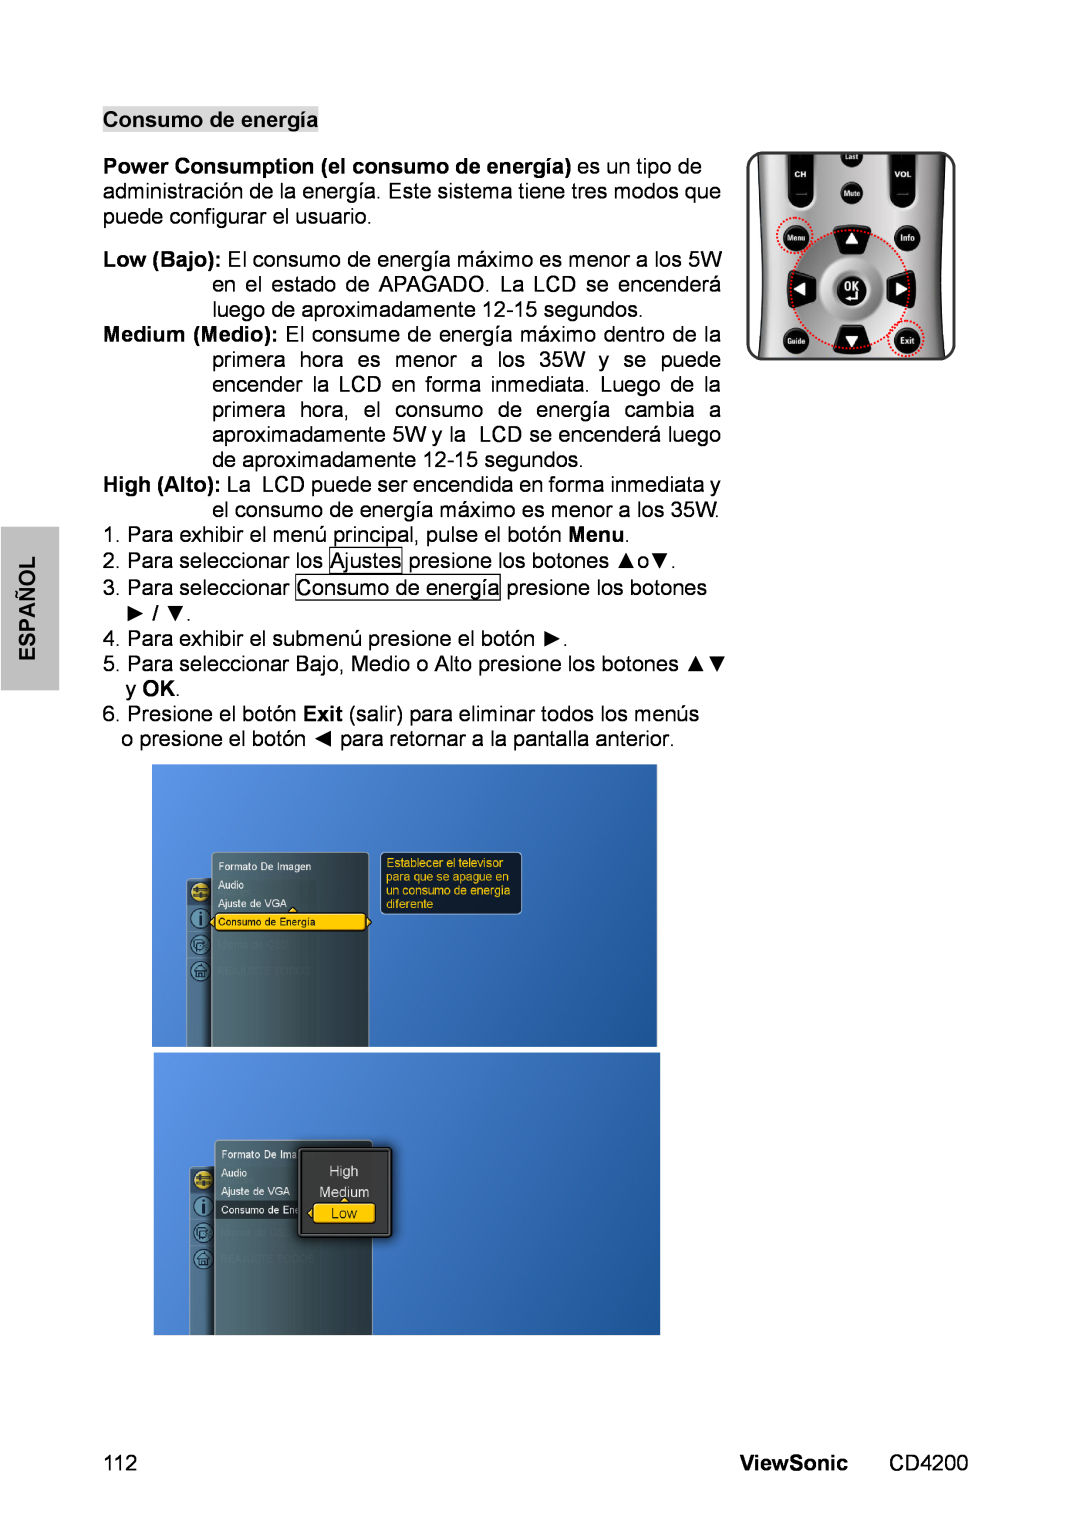 ViewSonic CD4200 manual Consumo de energía, Español, Para exhibir el menú principal, pulse el botón Menu, ViewSonic 